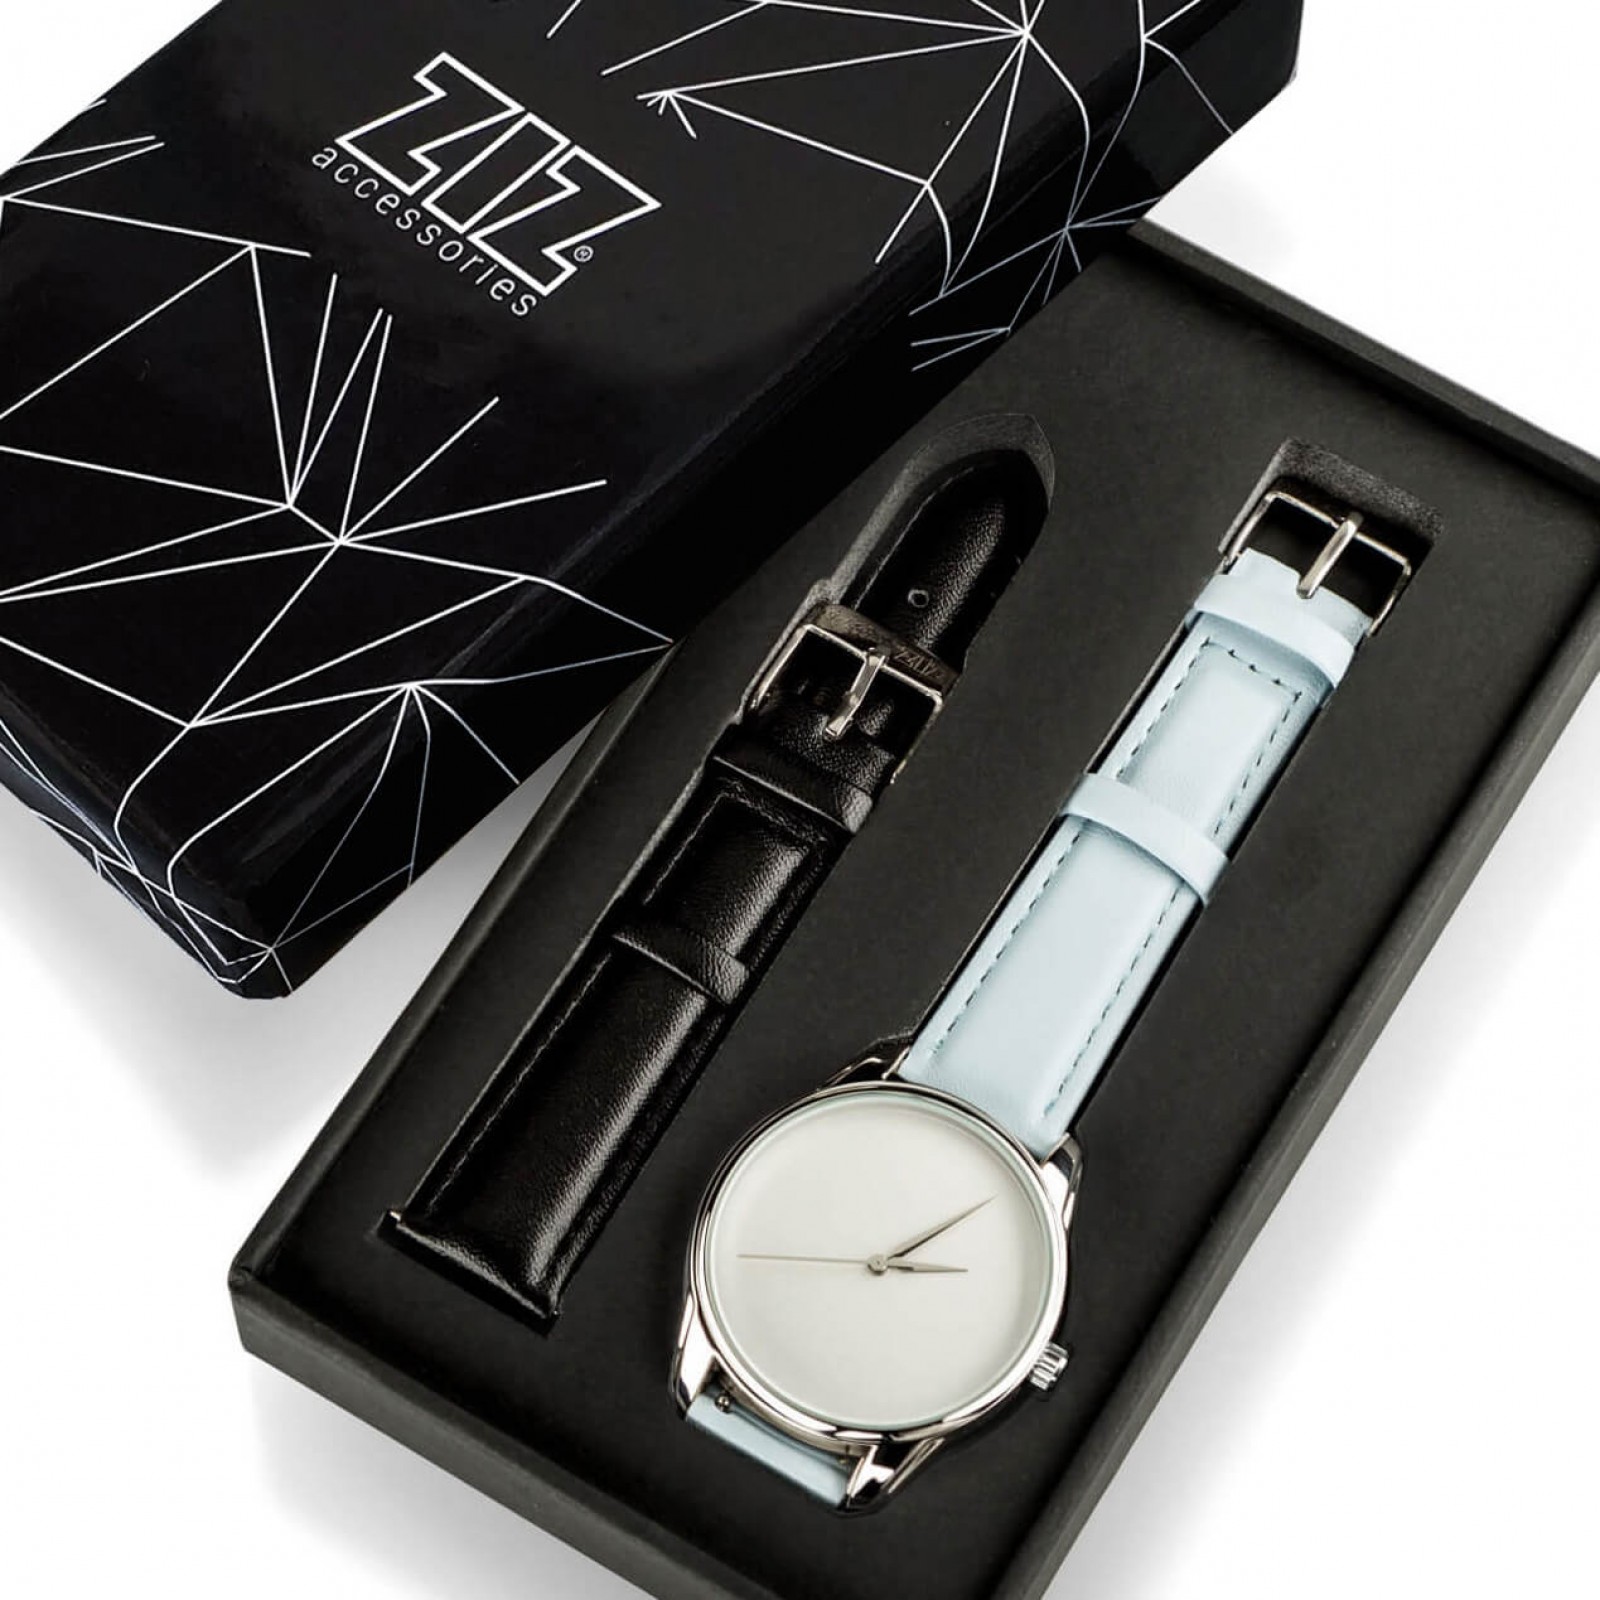 Годинник ZIZ Мінімалізм, ремінець ніжно-блакитний, срібло і додатковий ремінець 142858